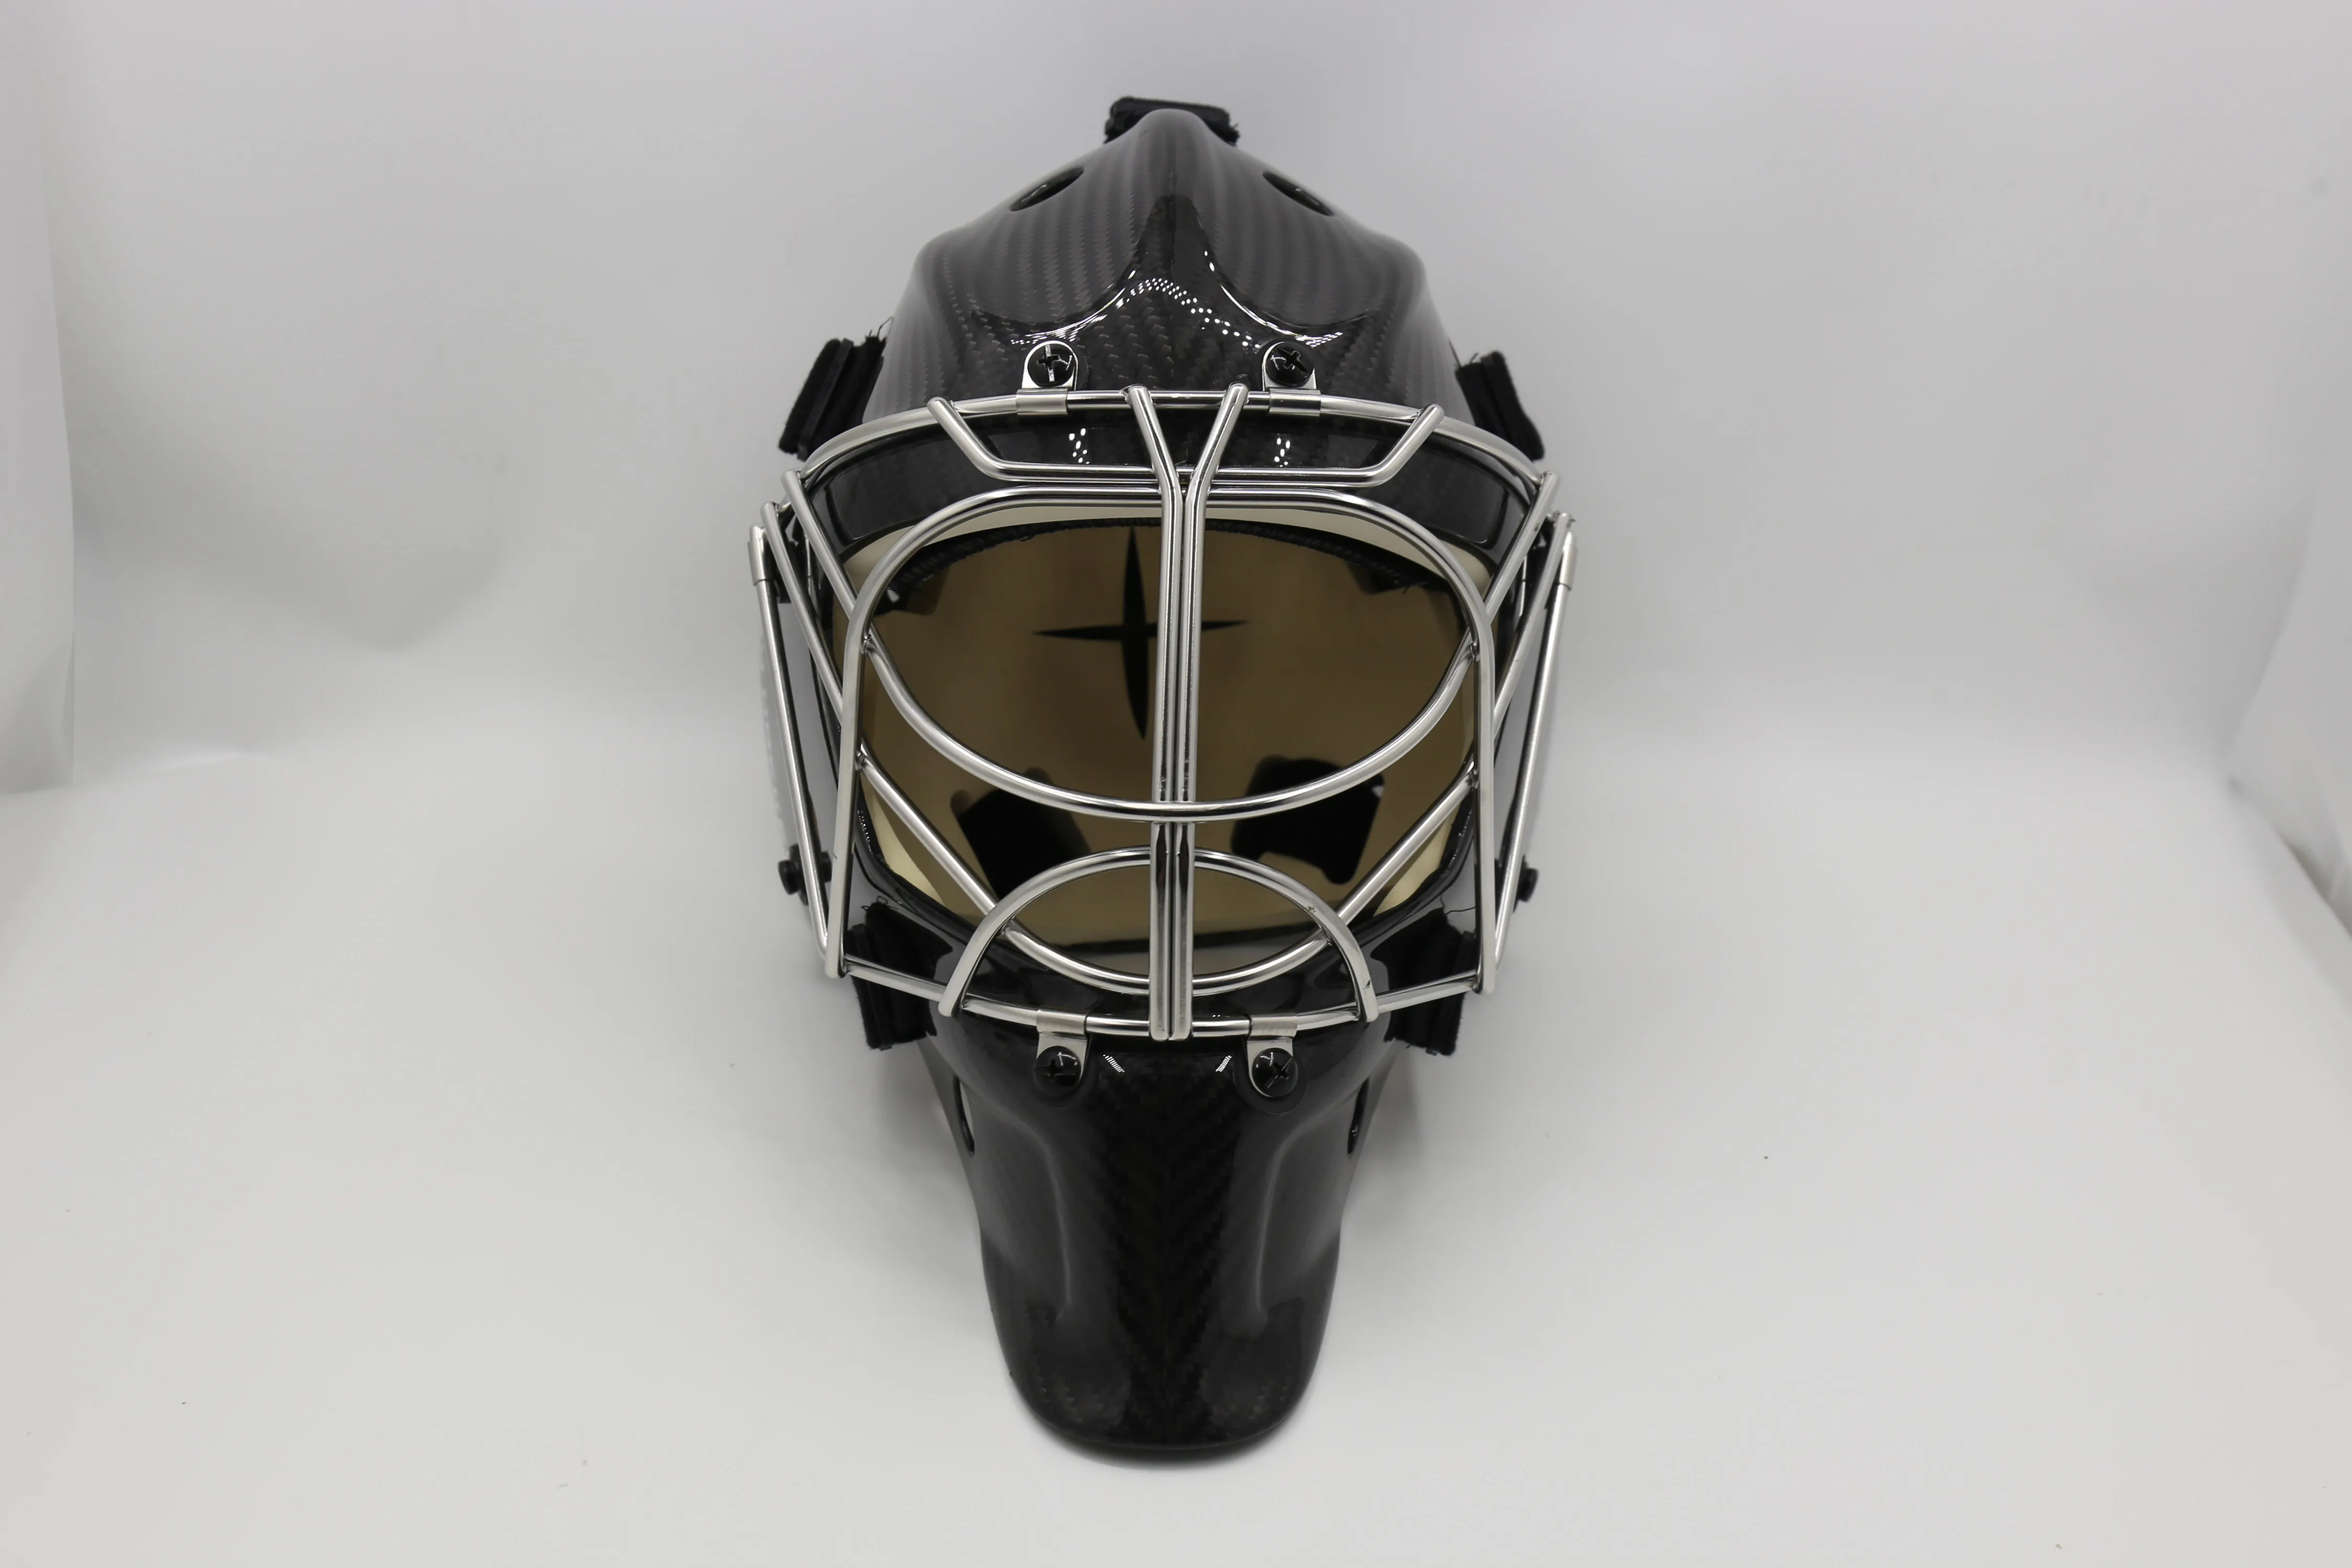 （NYTT) Den ultimata avancerade skräddarsydda ishockeymålvaktsmasken i kolfiber